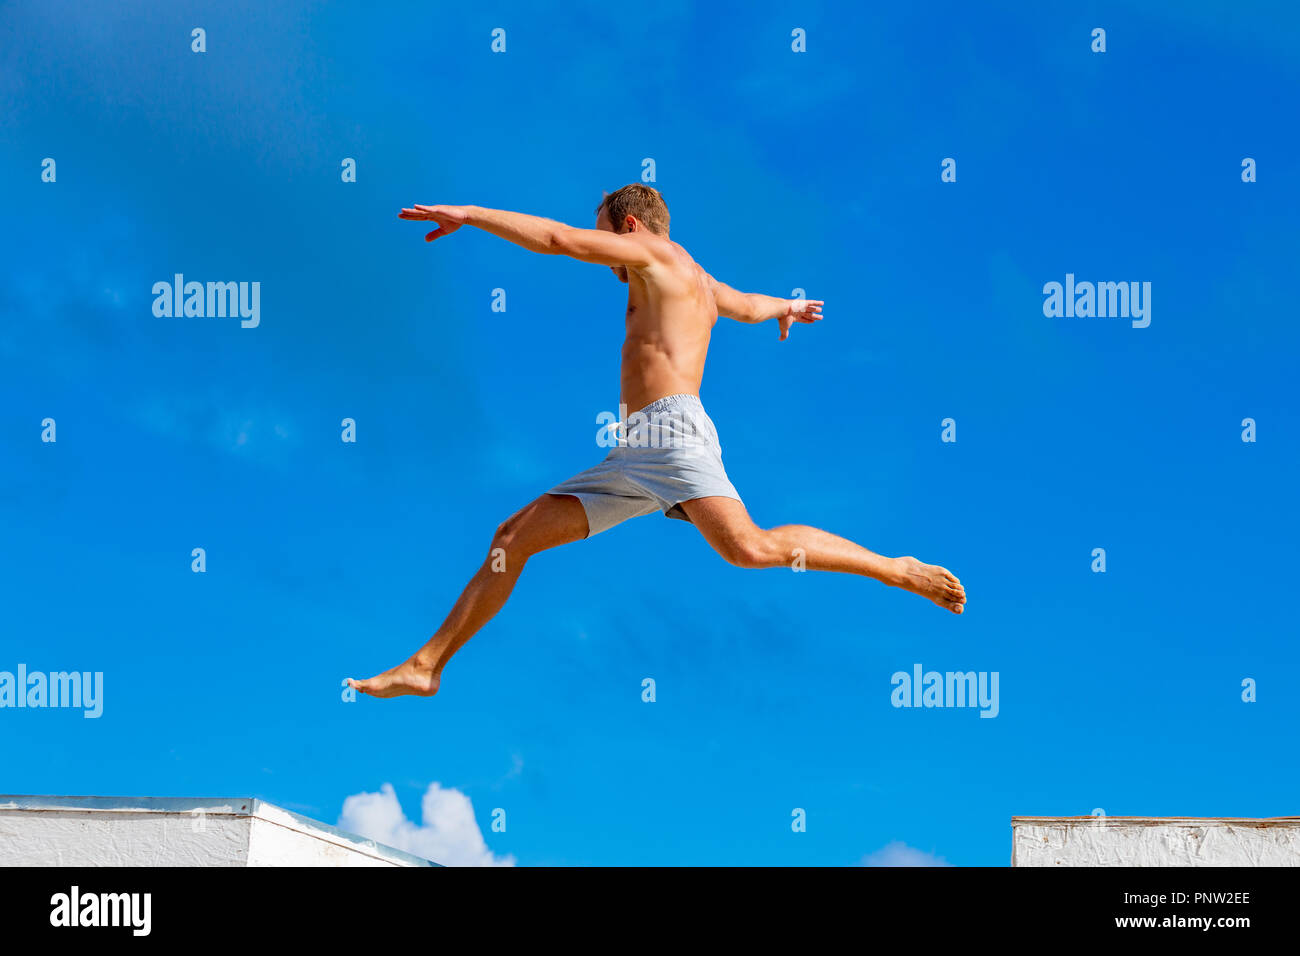 Joven haciendo parkour saltar sobre el fondo del cielo azul en un día soleado de verano Foto de stock